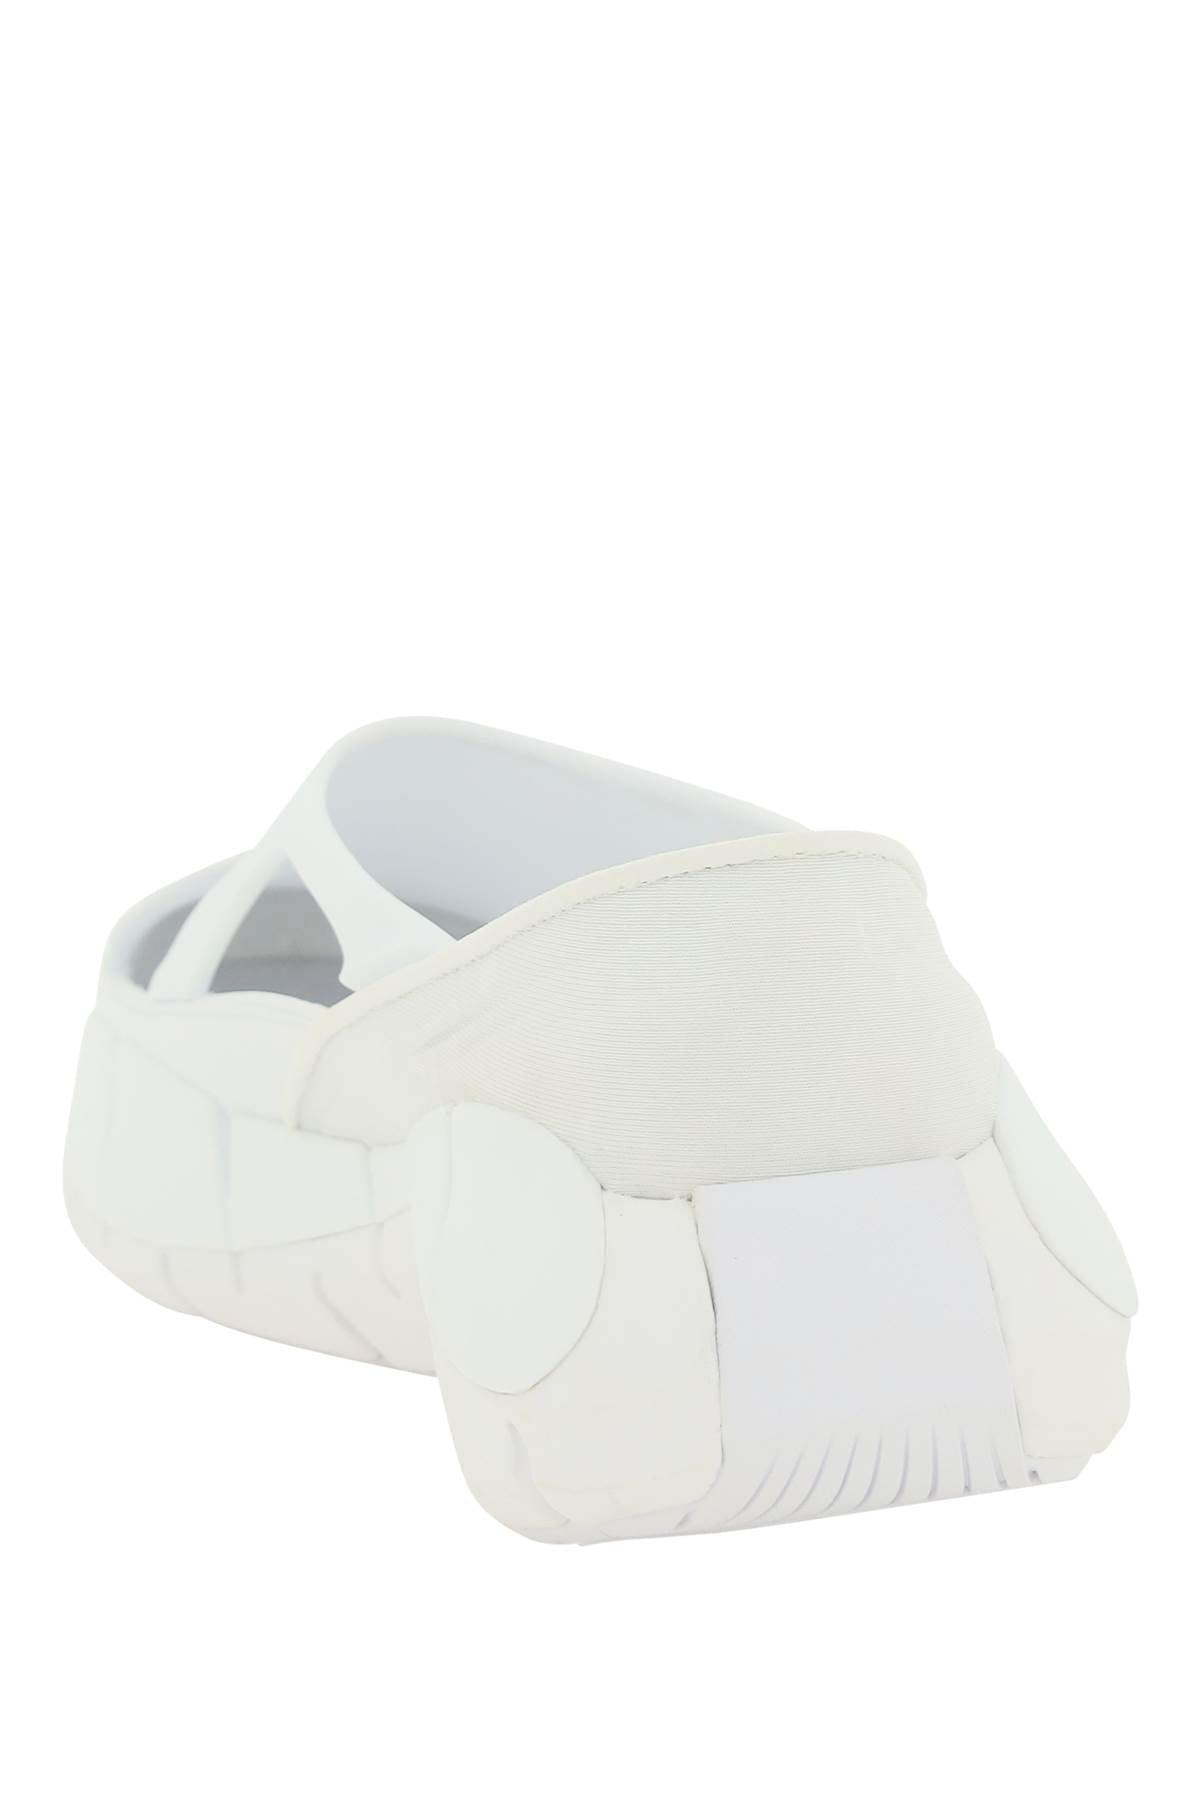 Maison Margiela Project 0 Cr Reebok Sneakers in White for Men | Lyst